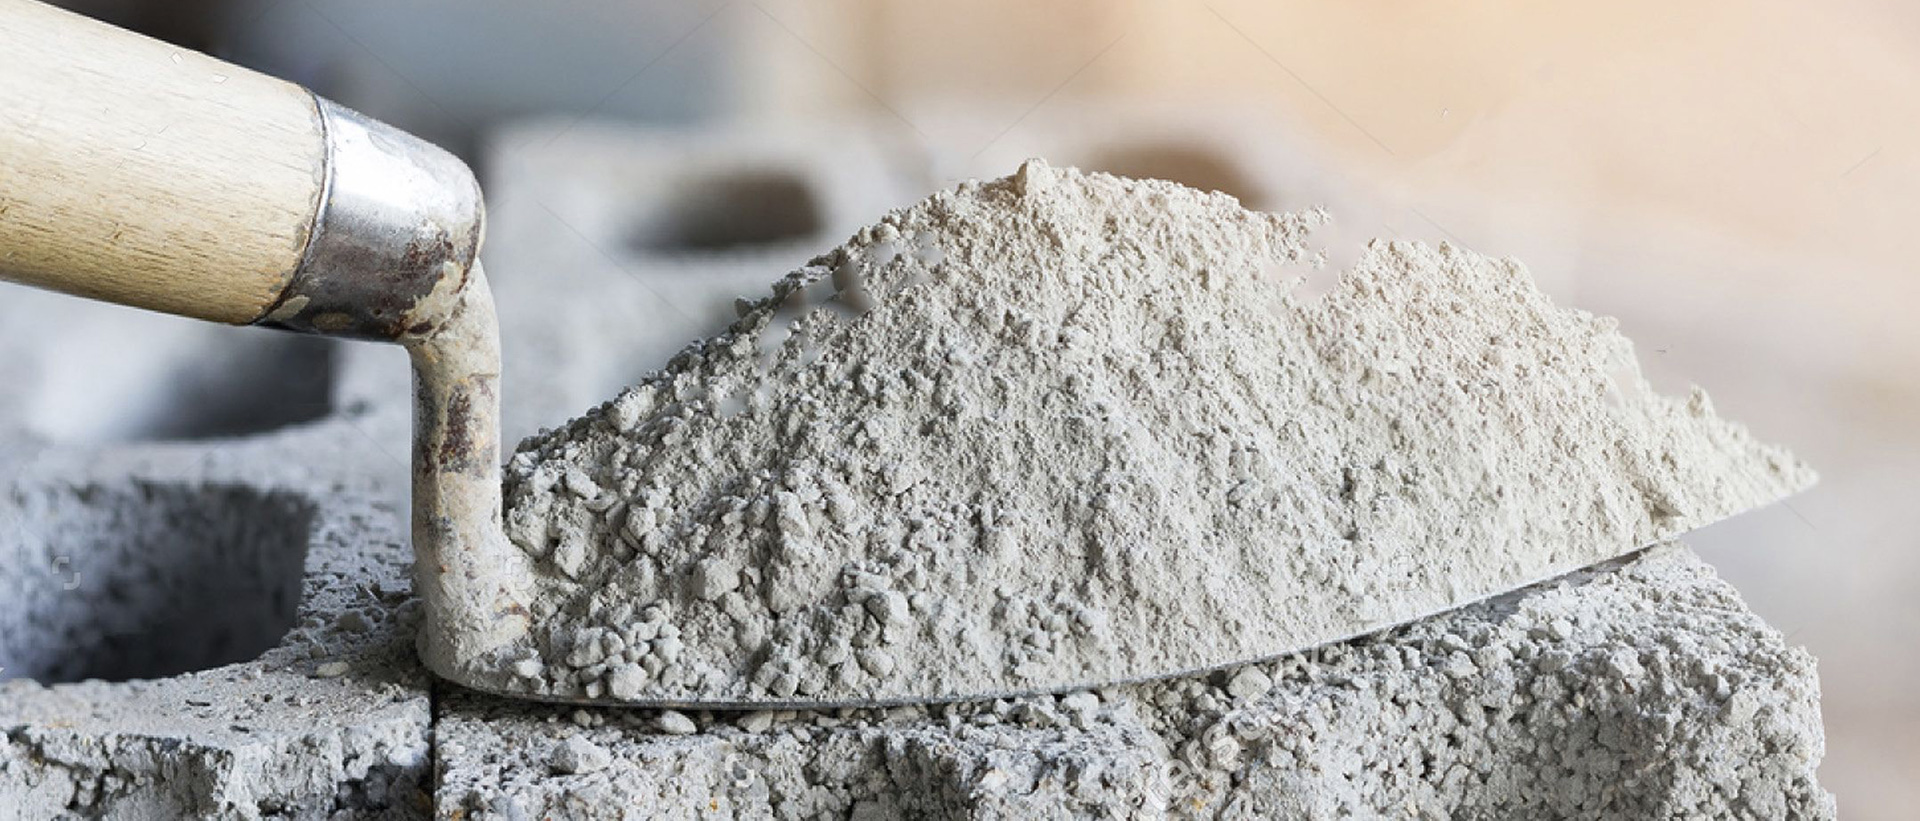 Испытания строительных материалов: 
песок, цемент, щебень